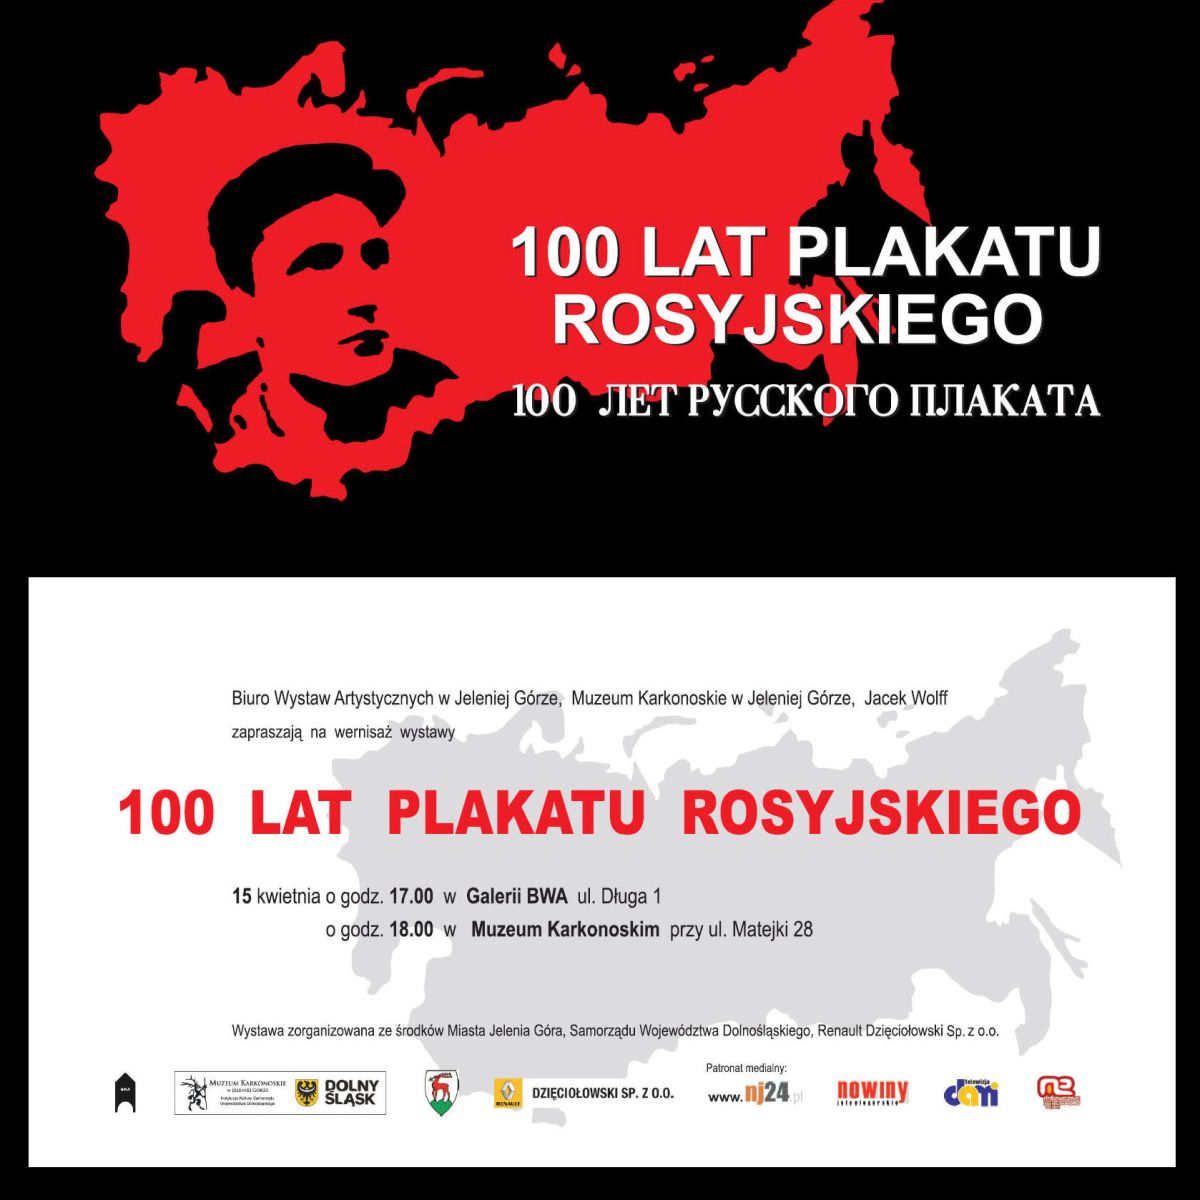 100 lat plakatu rosyjskiego